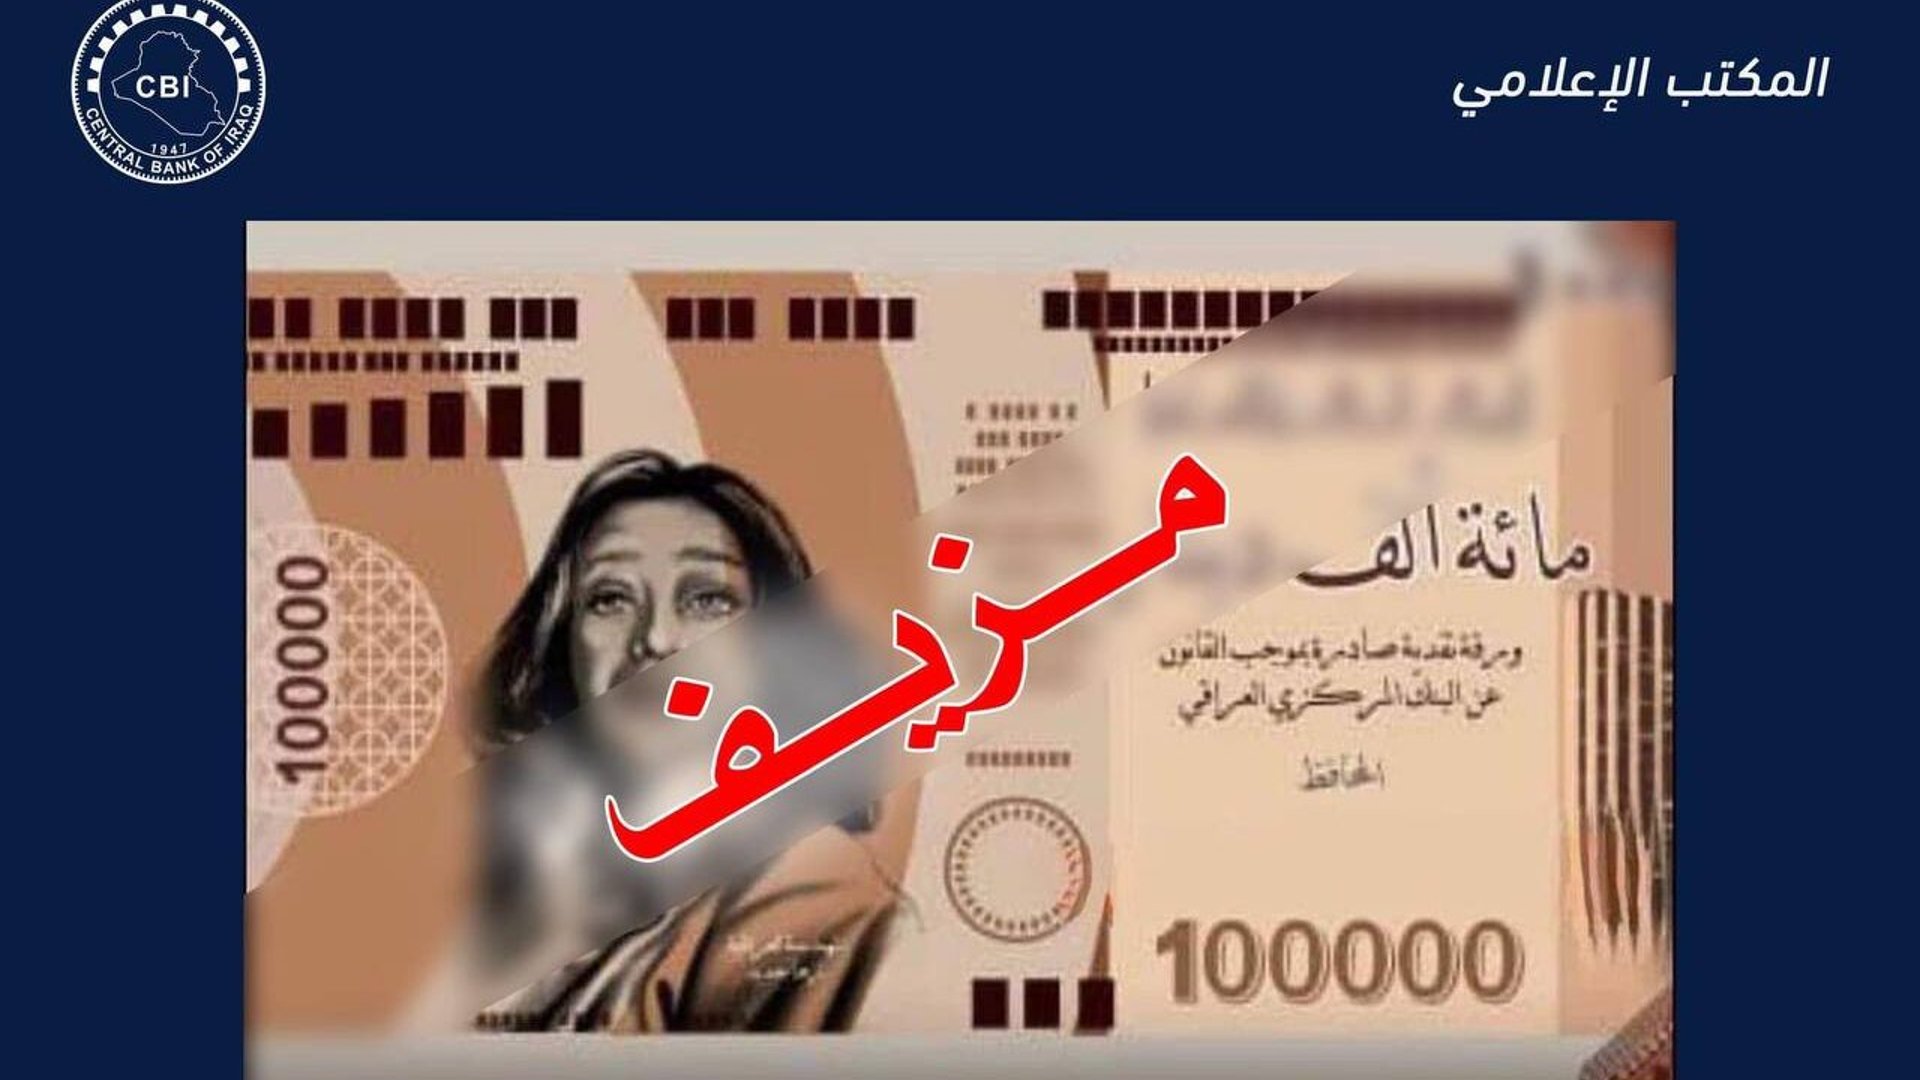 البنك المركزي ينفي إصدار عملة جديدة من فئة 100 ألف دينار: الصورة مزورة